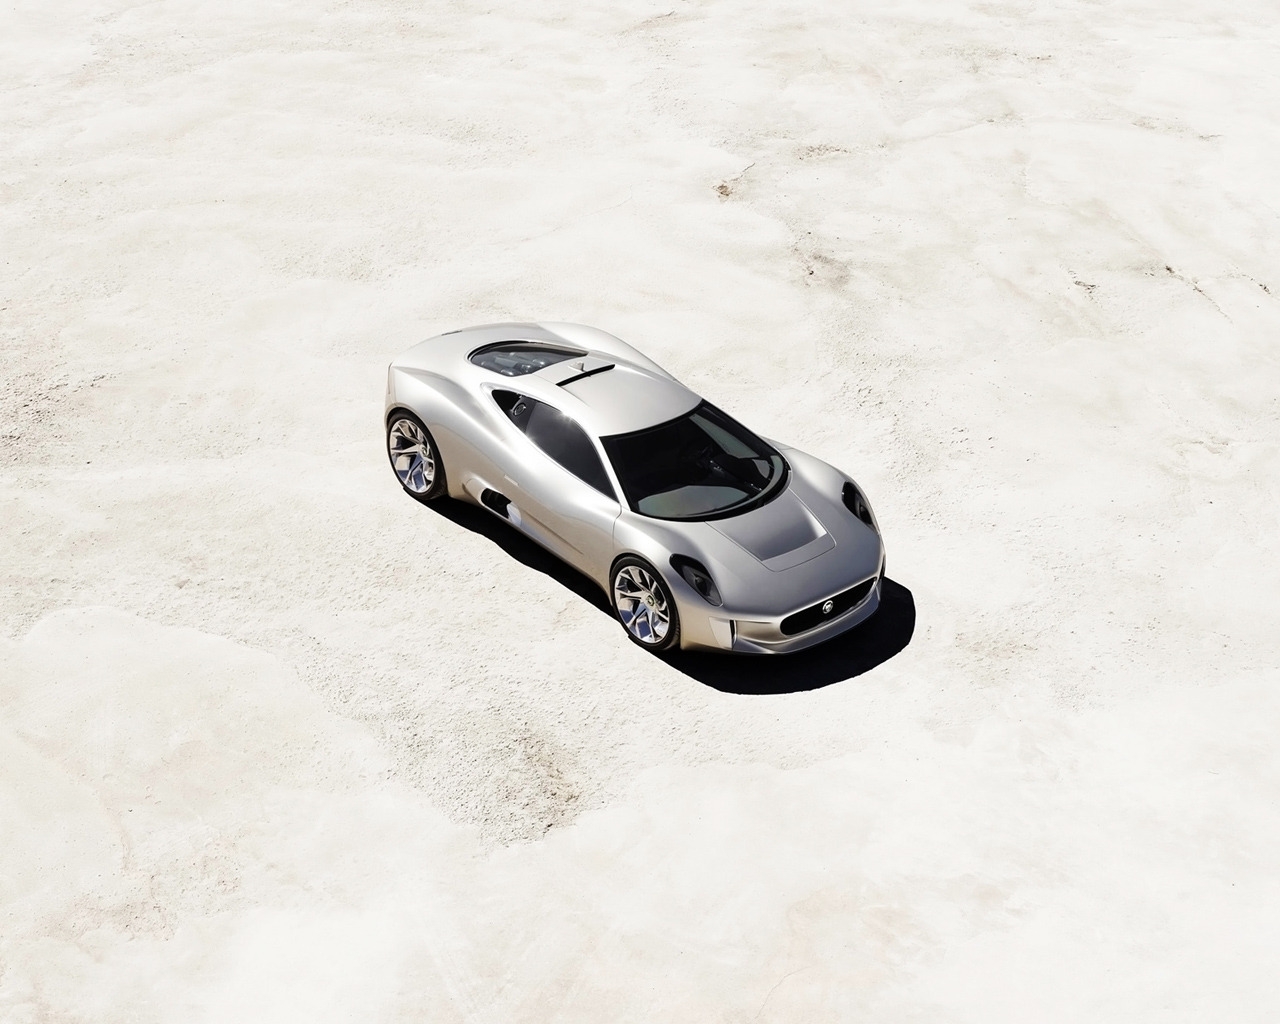 2010 Jaguar C-X75 Concept for 1280 x 1024 resolution